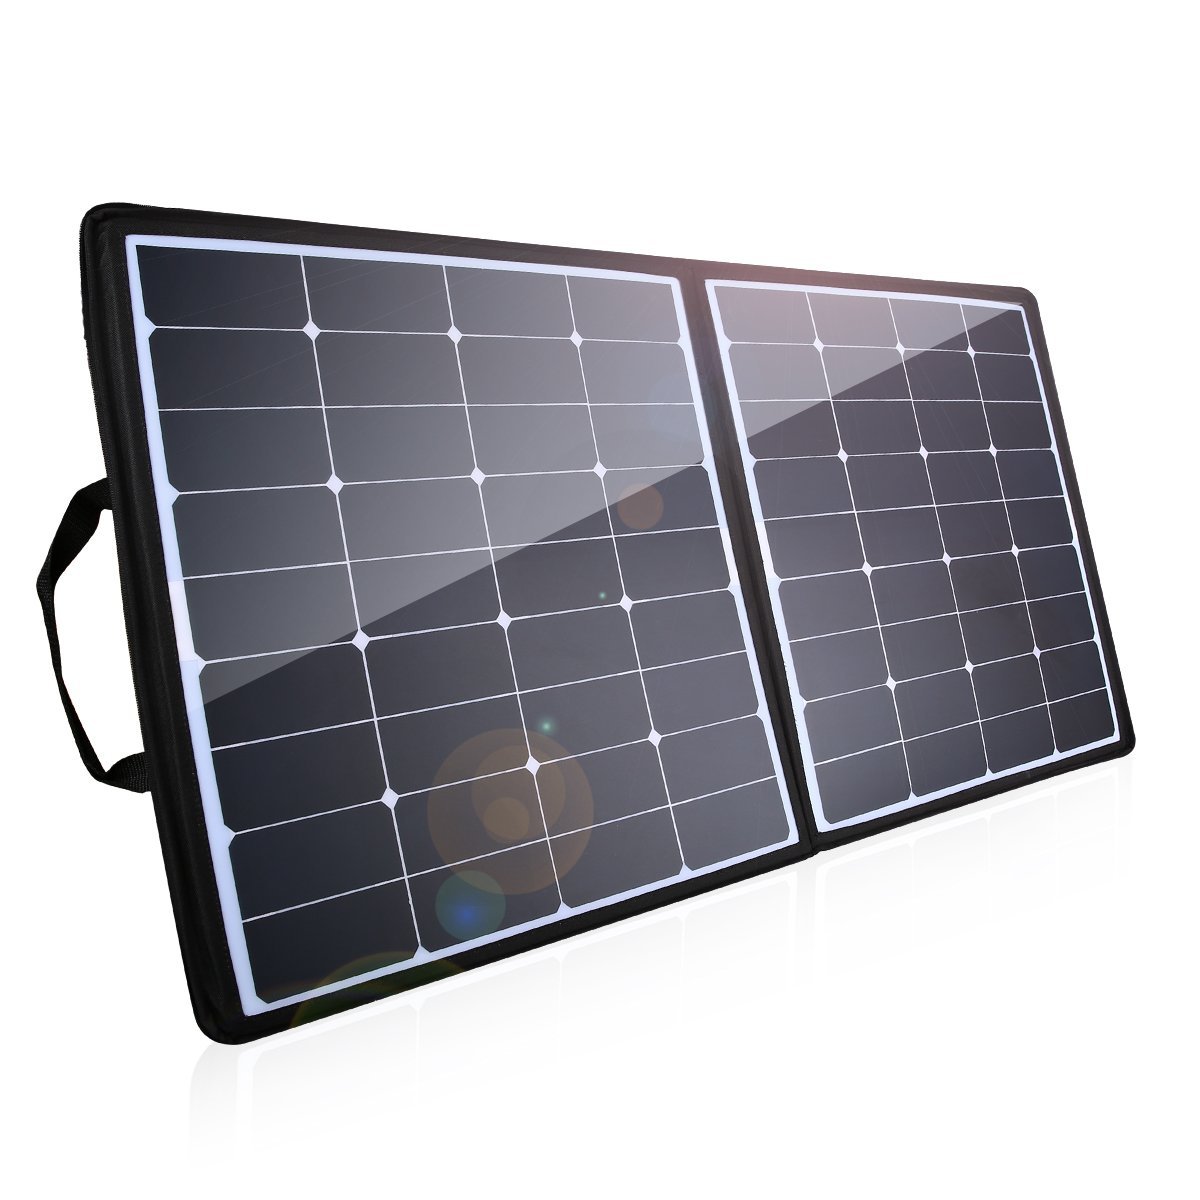 Newpowa 100 Watts 12 Volts Polycrystalline Solar Panel 100W 12V High Efficiency Module Rv Marine Boat Off Grid